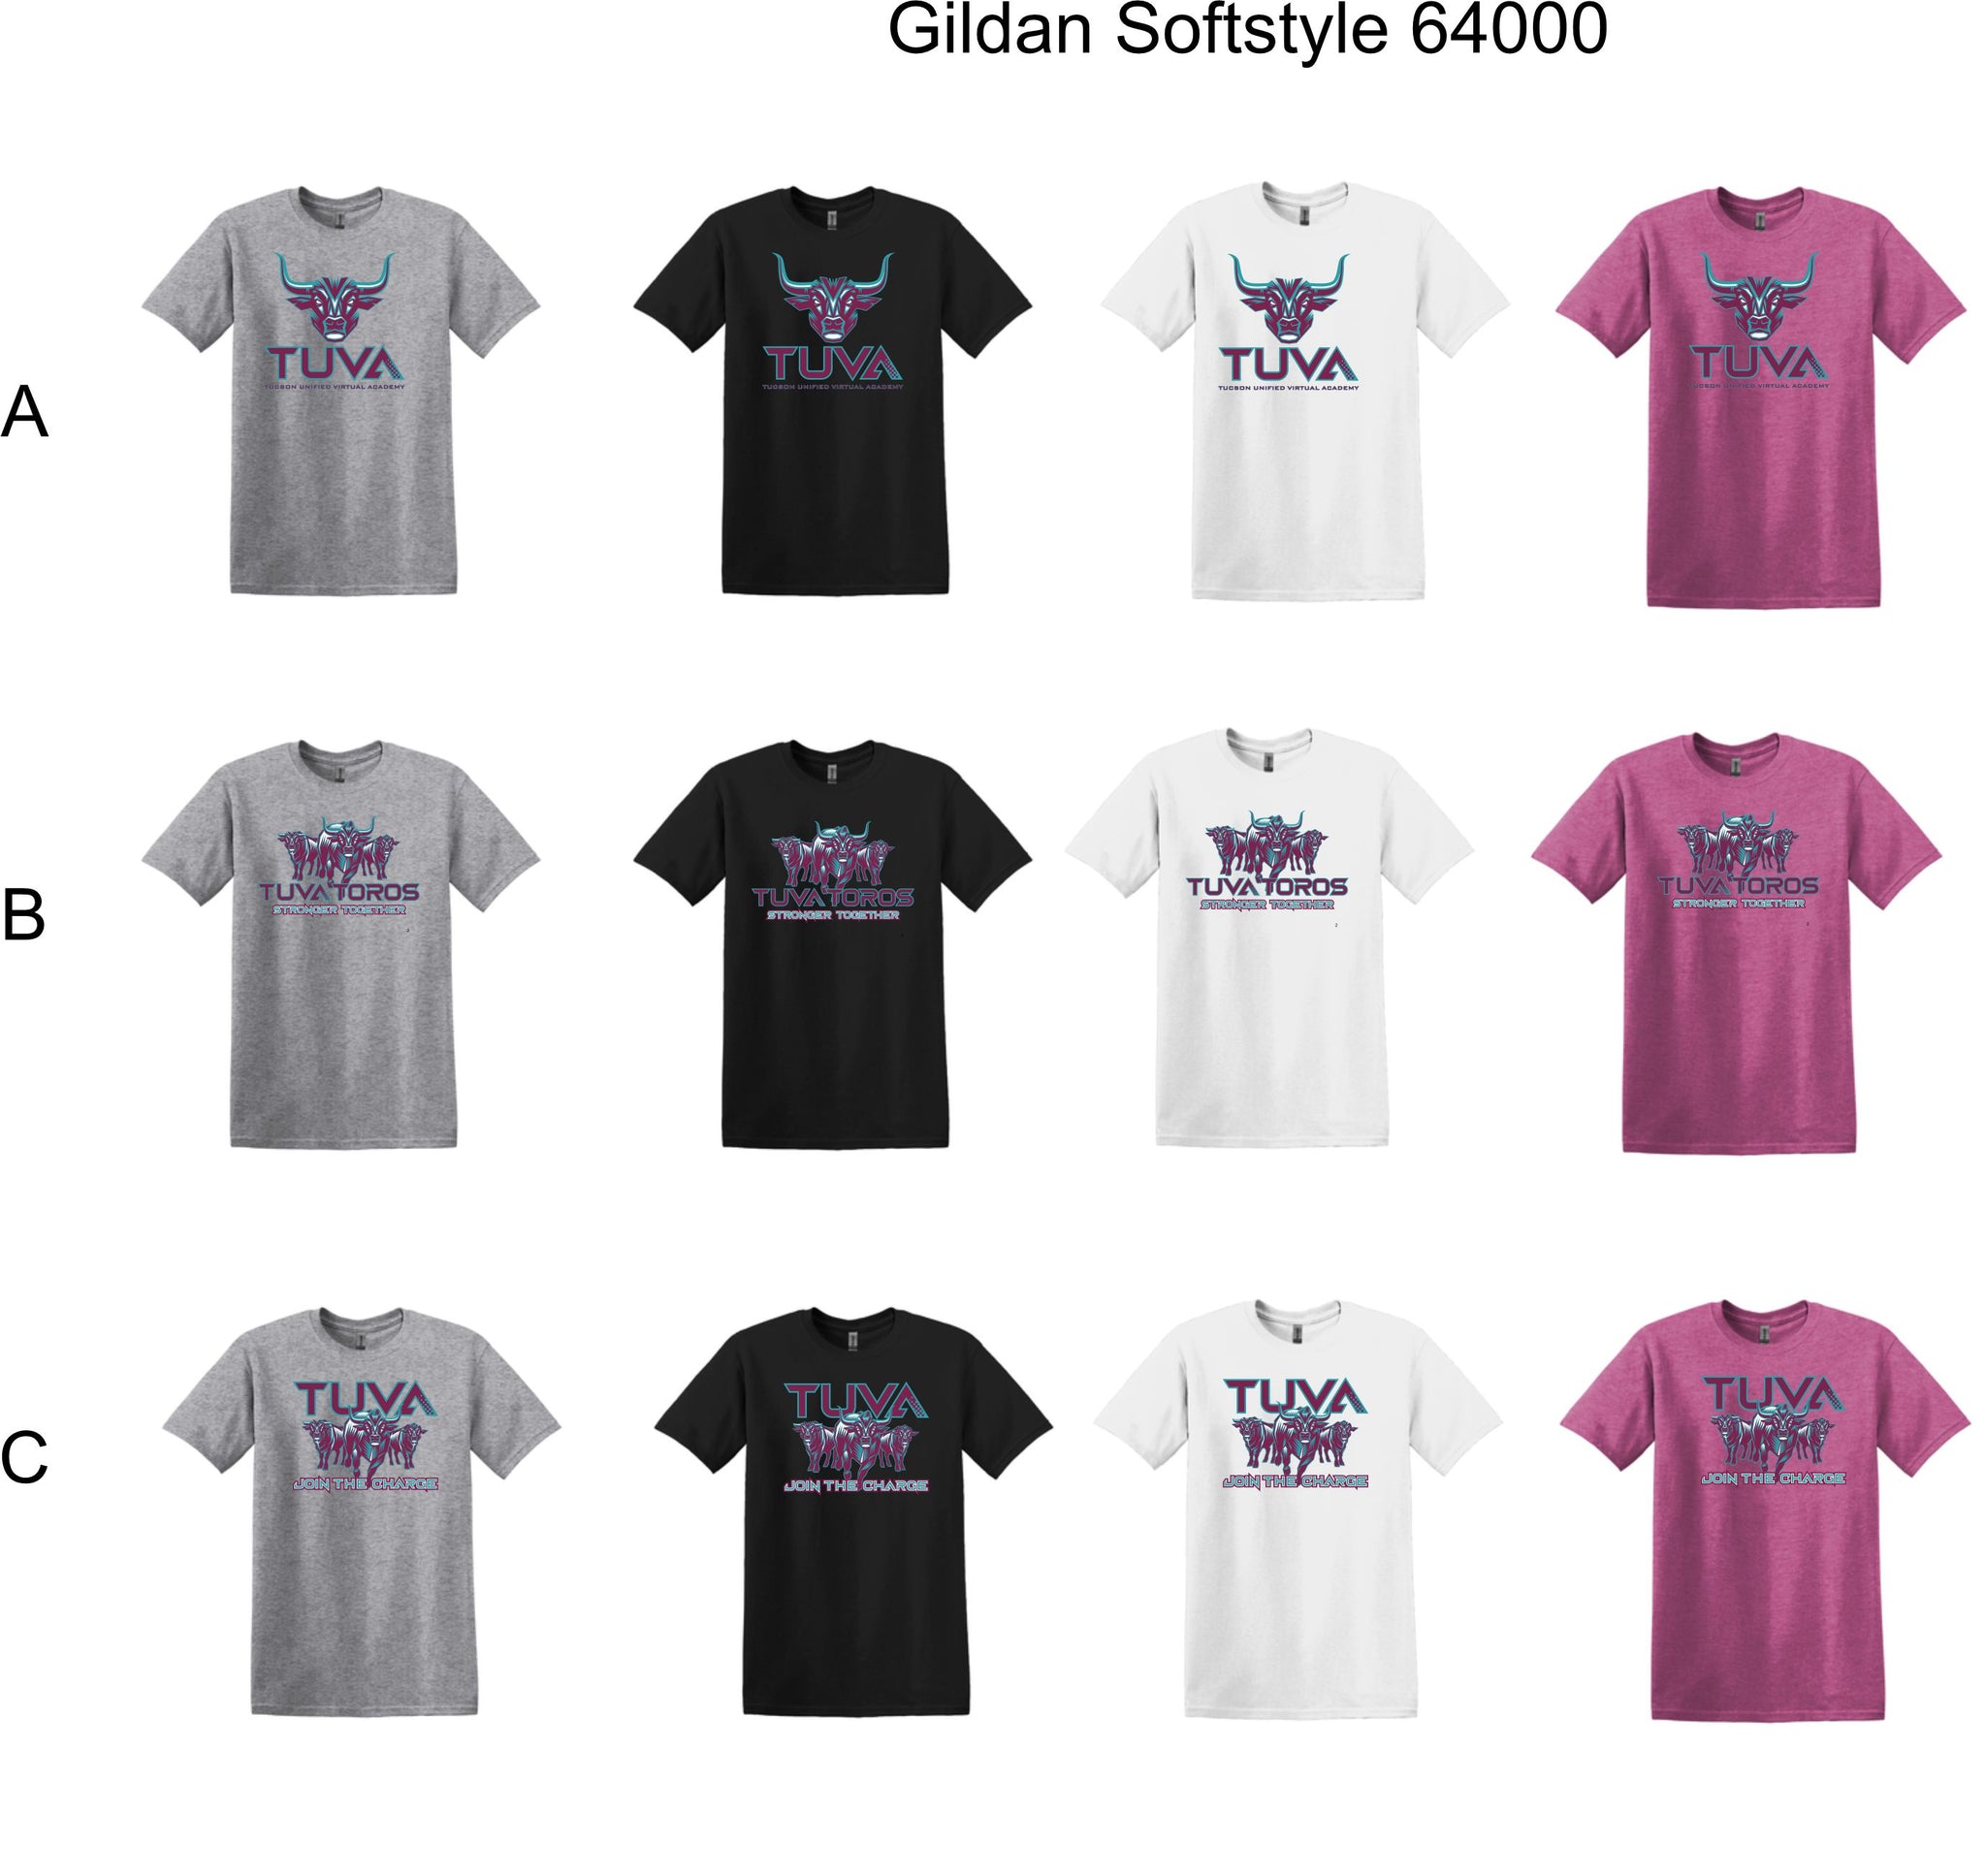 TUVA - Gildan Softstyle 64000